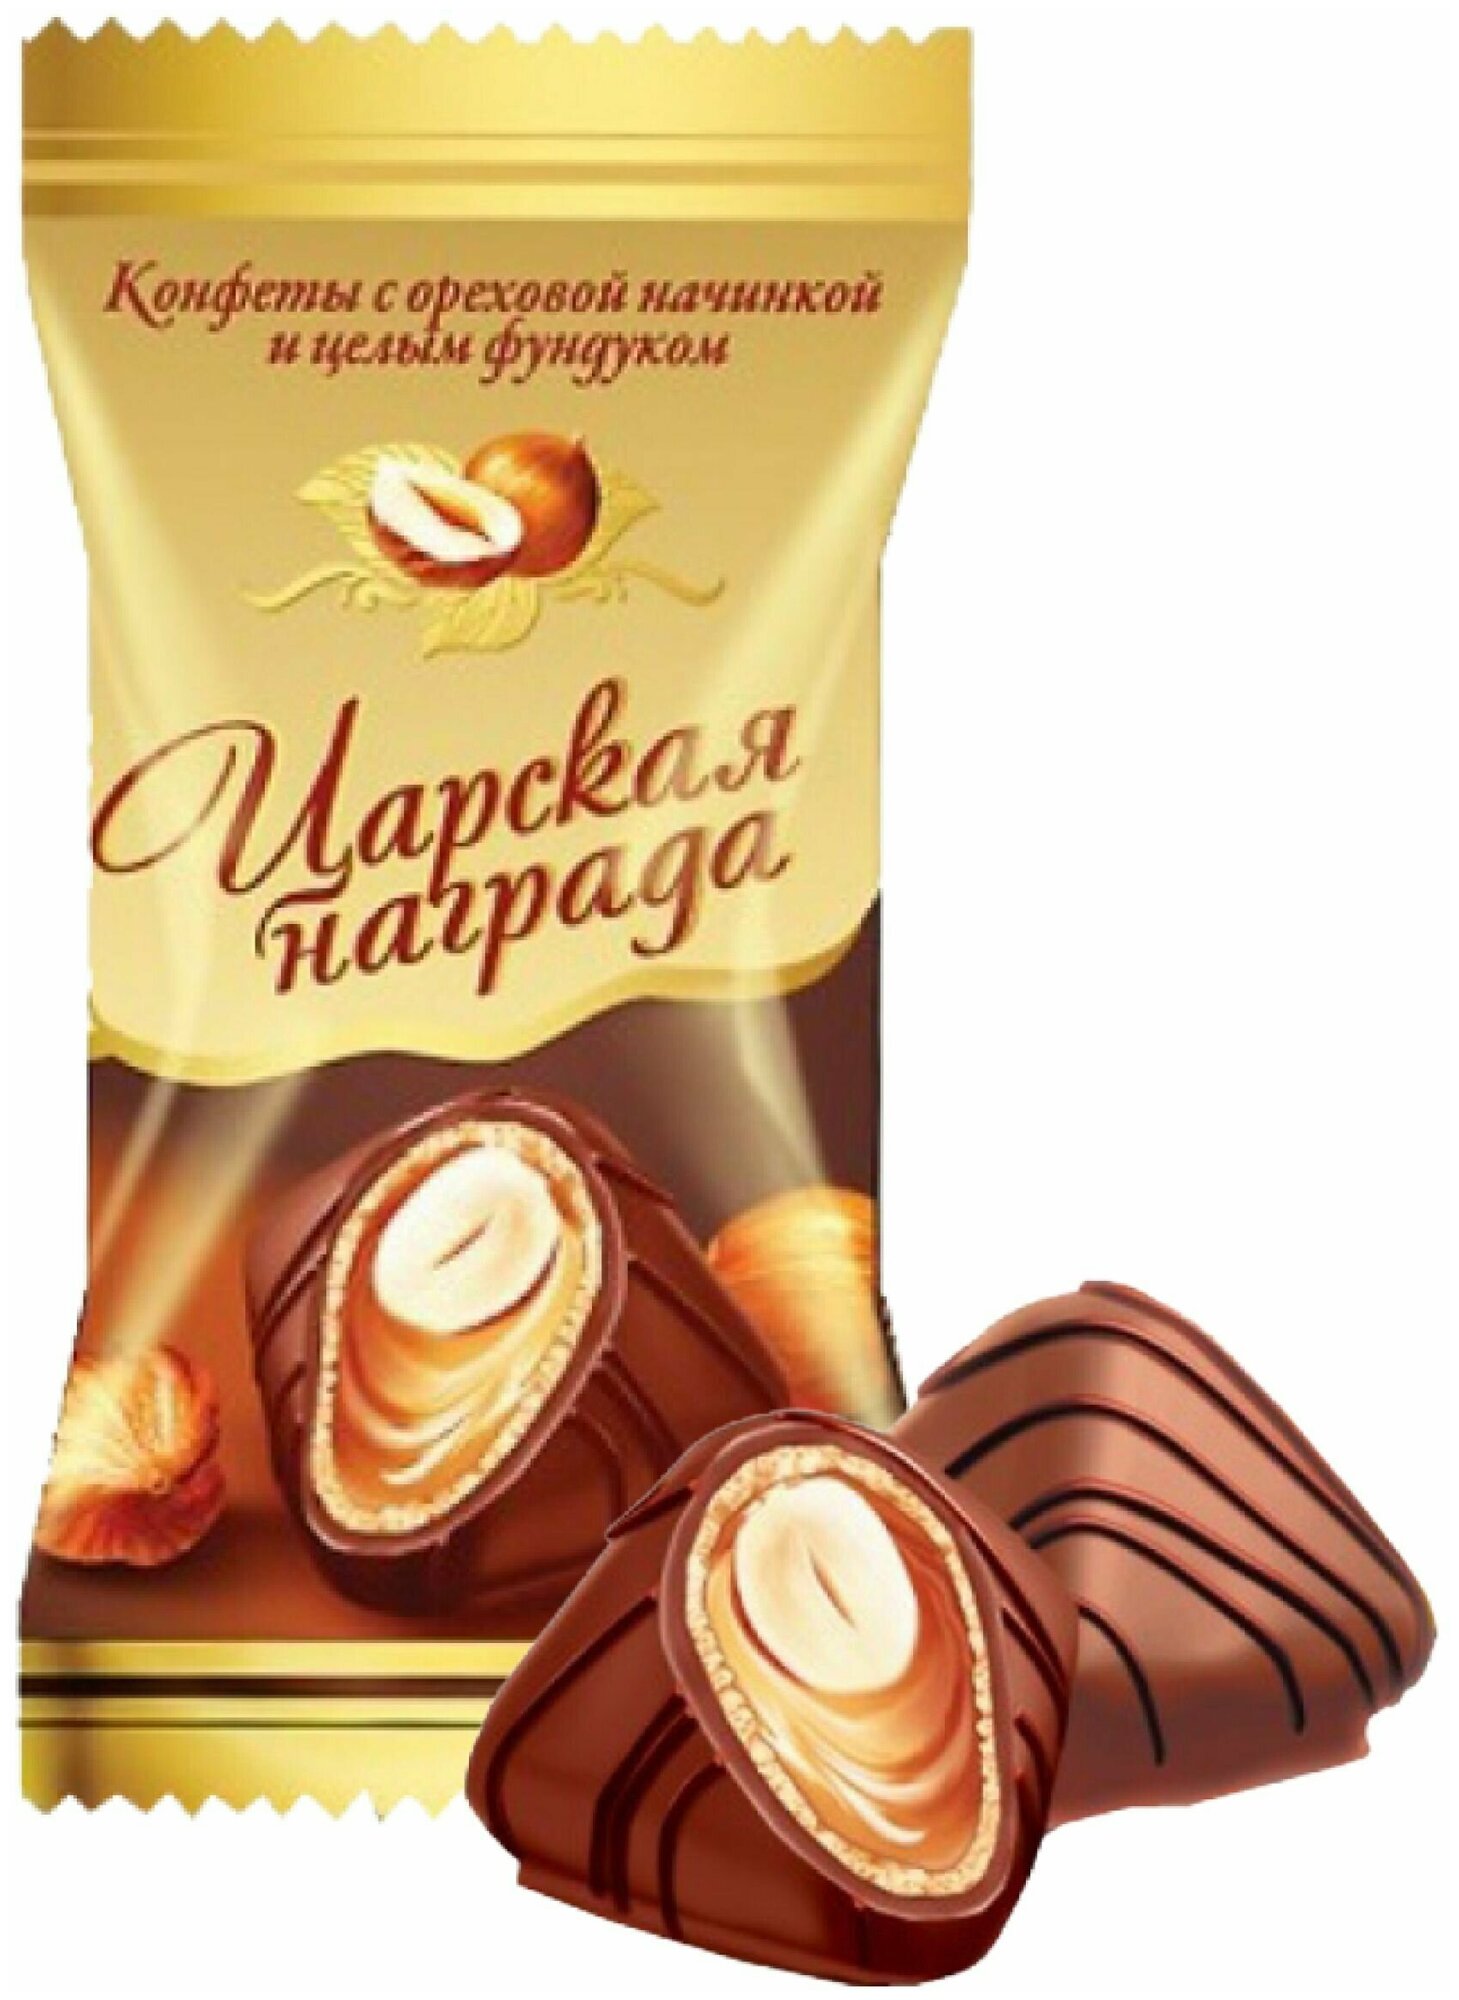 Конфеты шоколадные "Царская награда" с ореховой начинкой и целым фундуком, ТМ Лаконд, 400 гр.